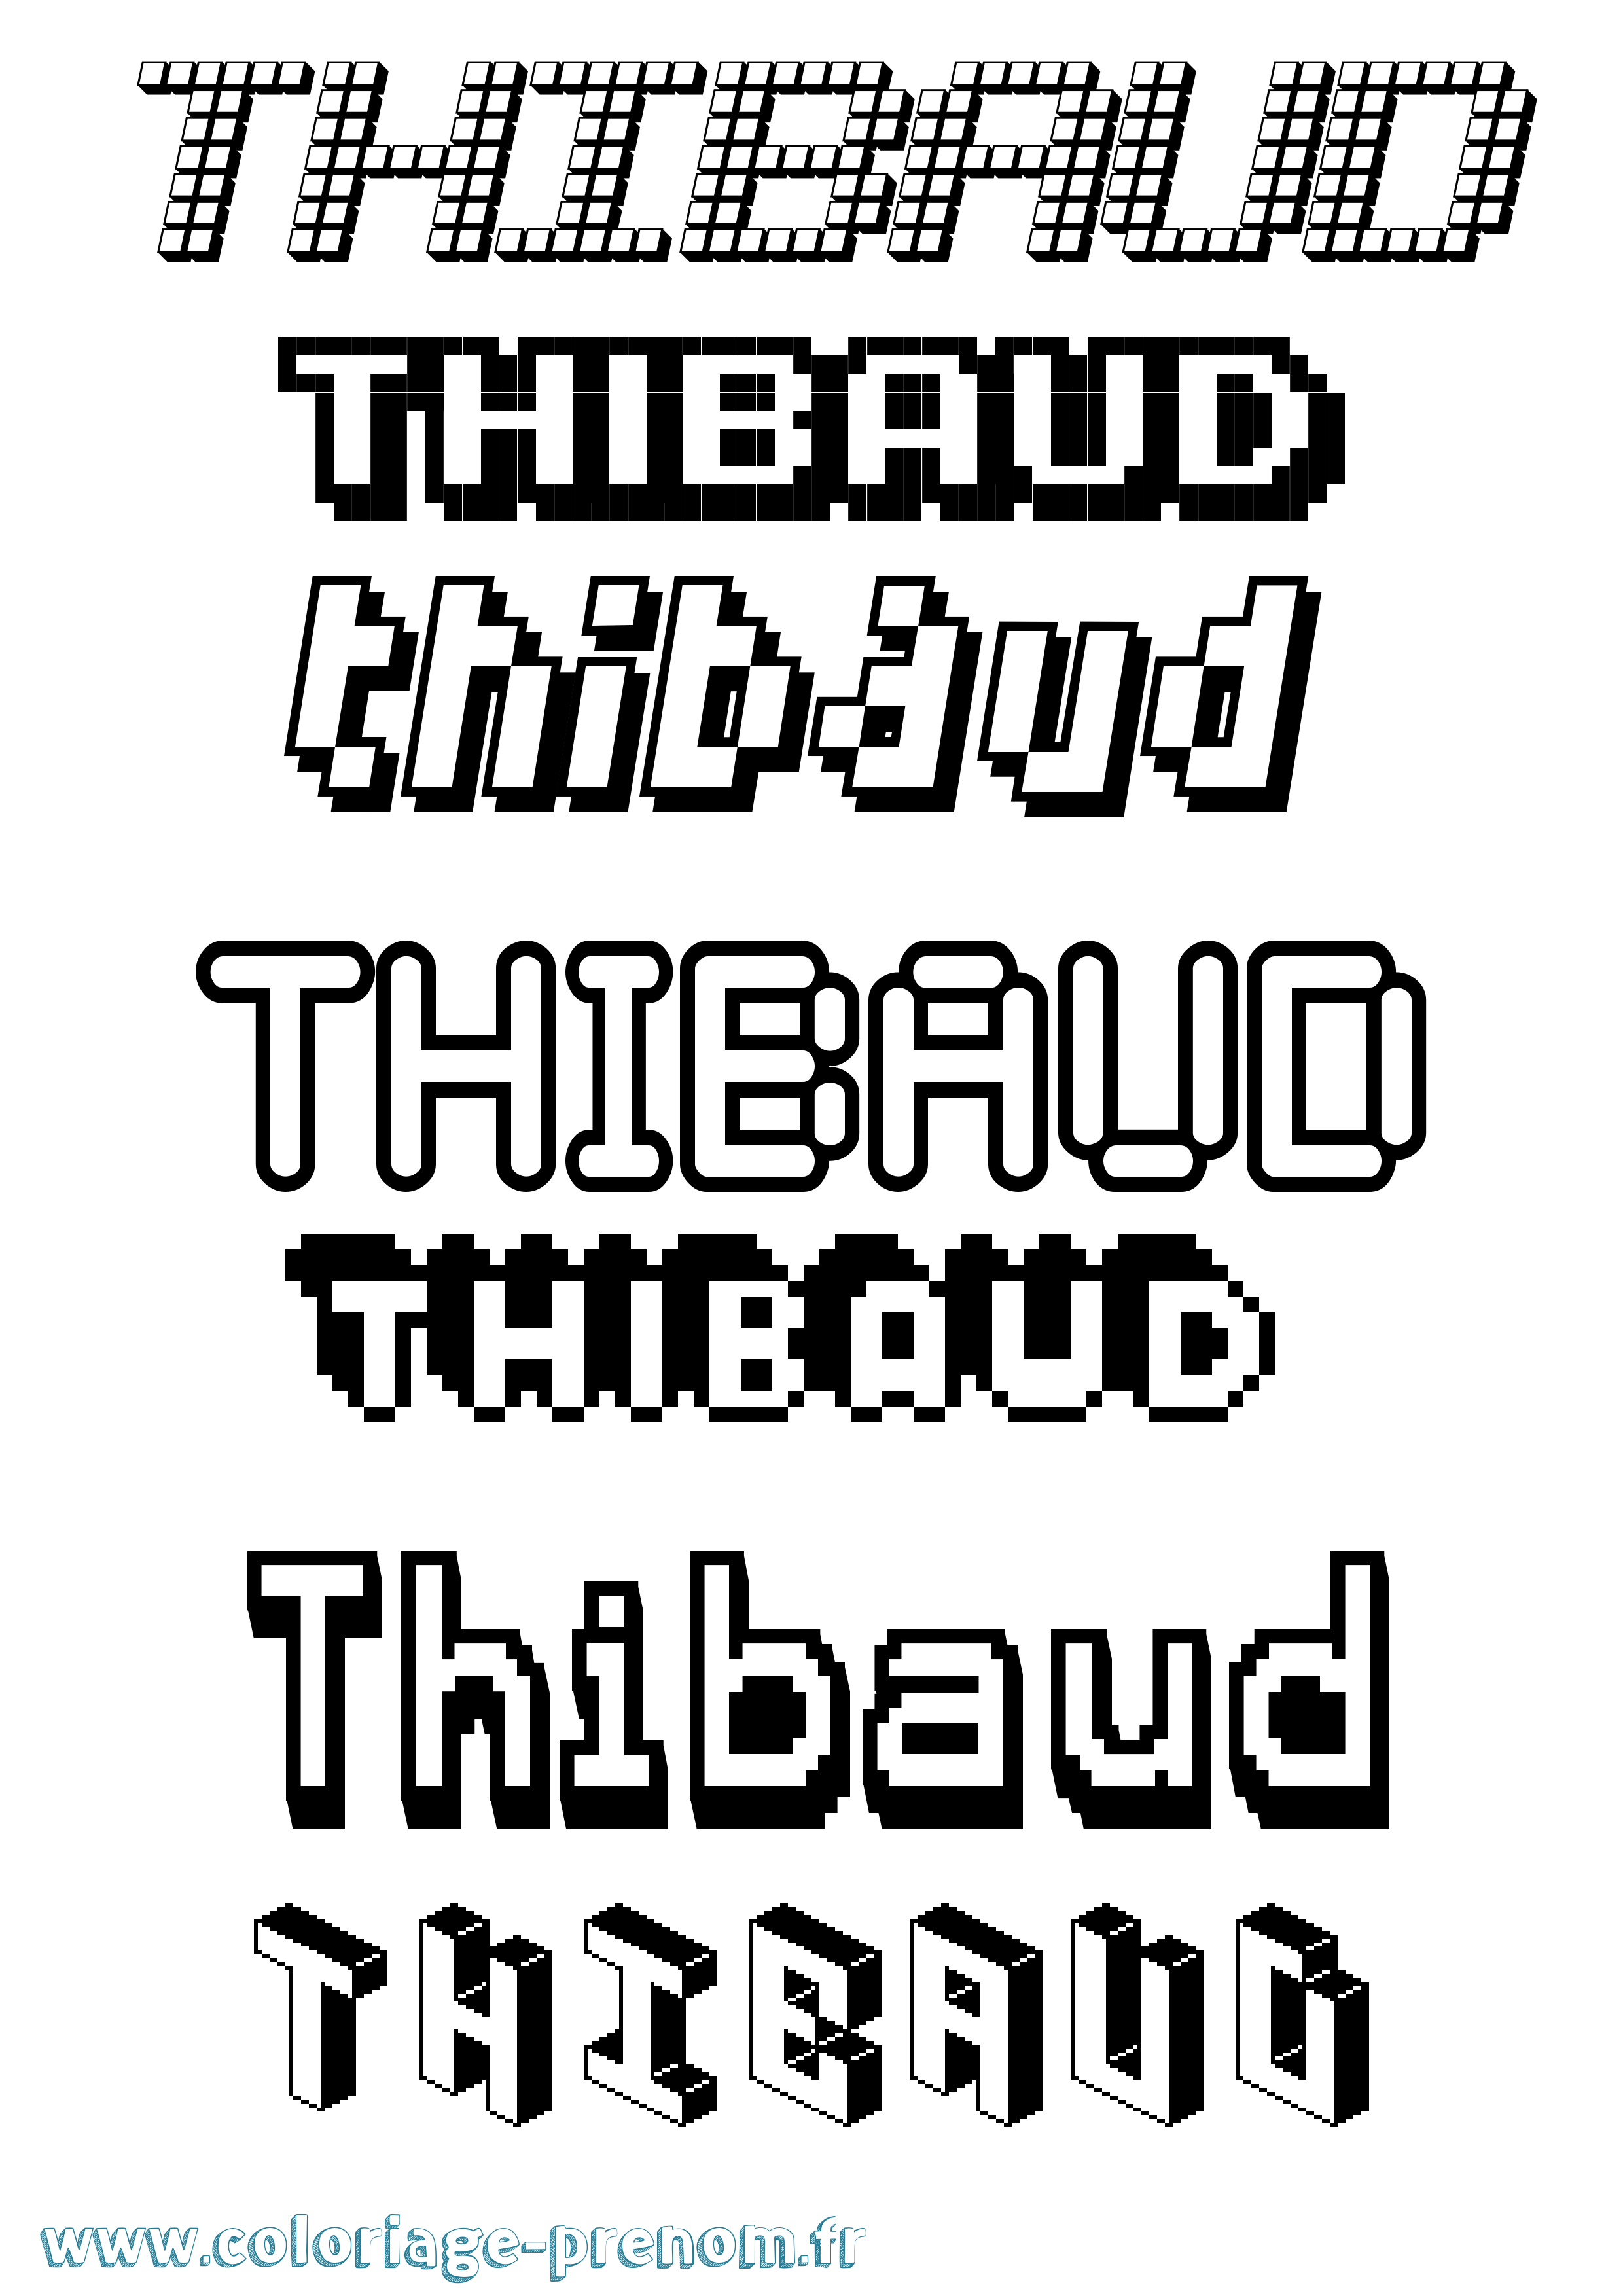 Coloriage prénom Thibaud Pixel